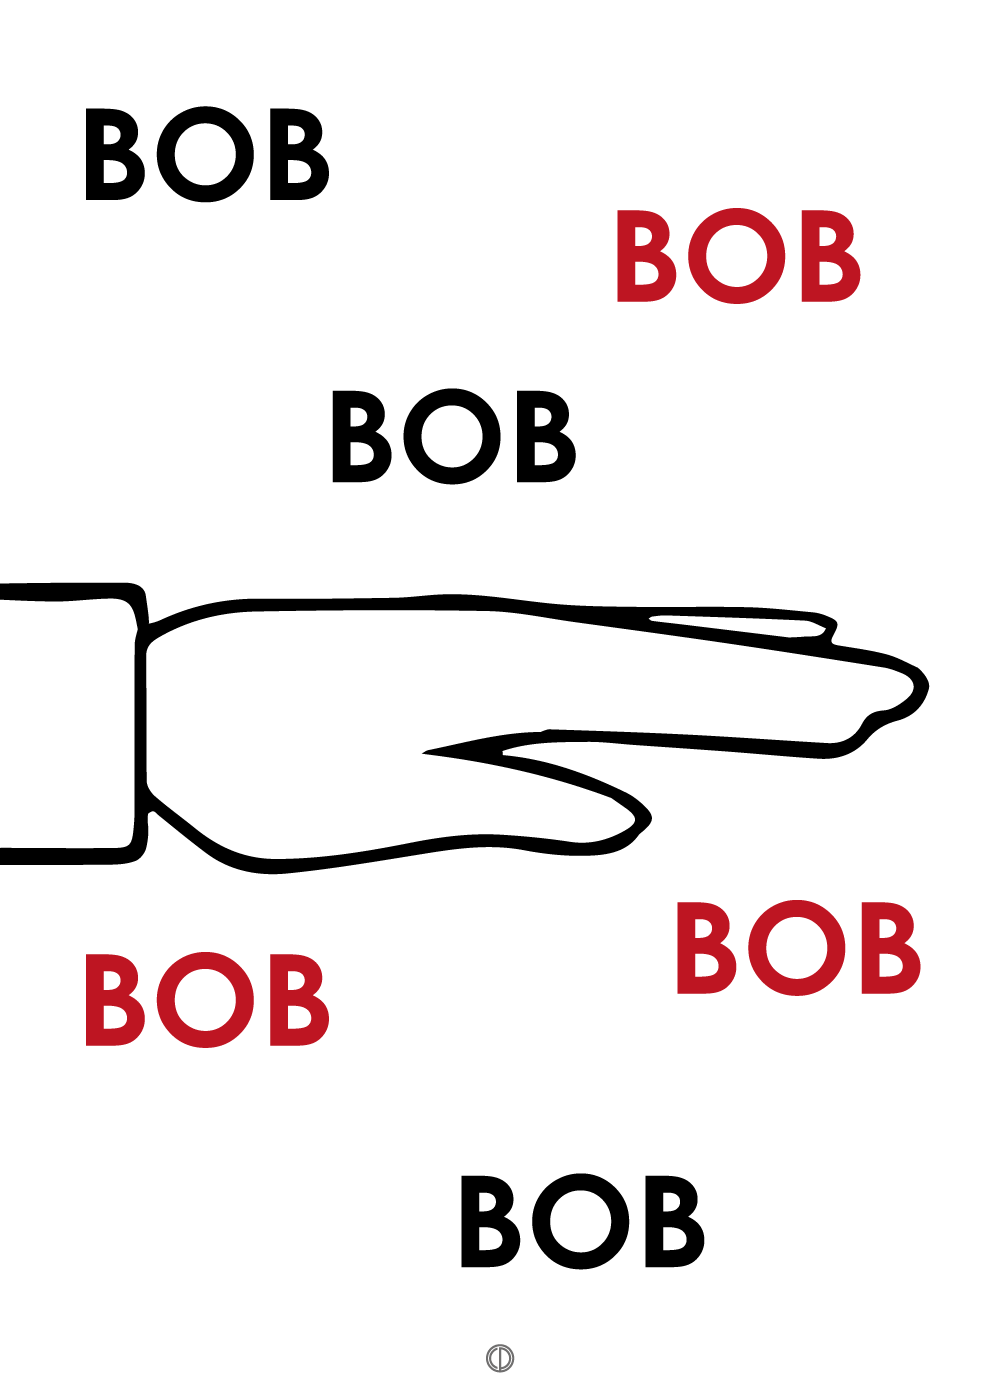 Bob bob bob bob